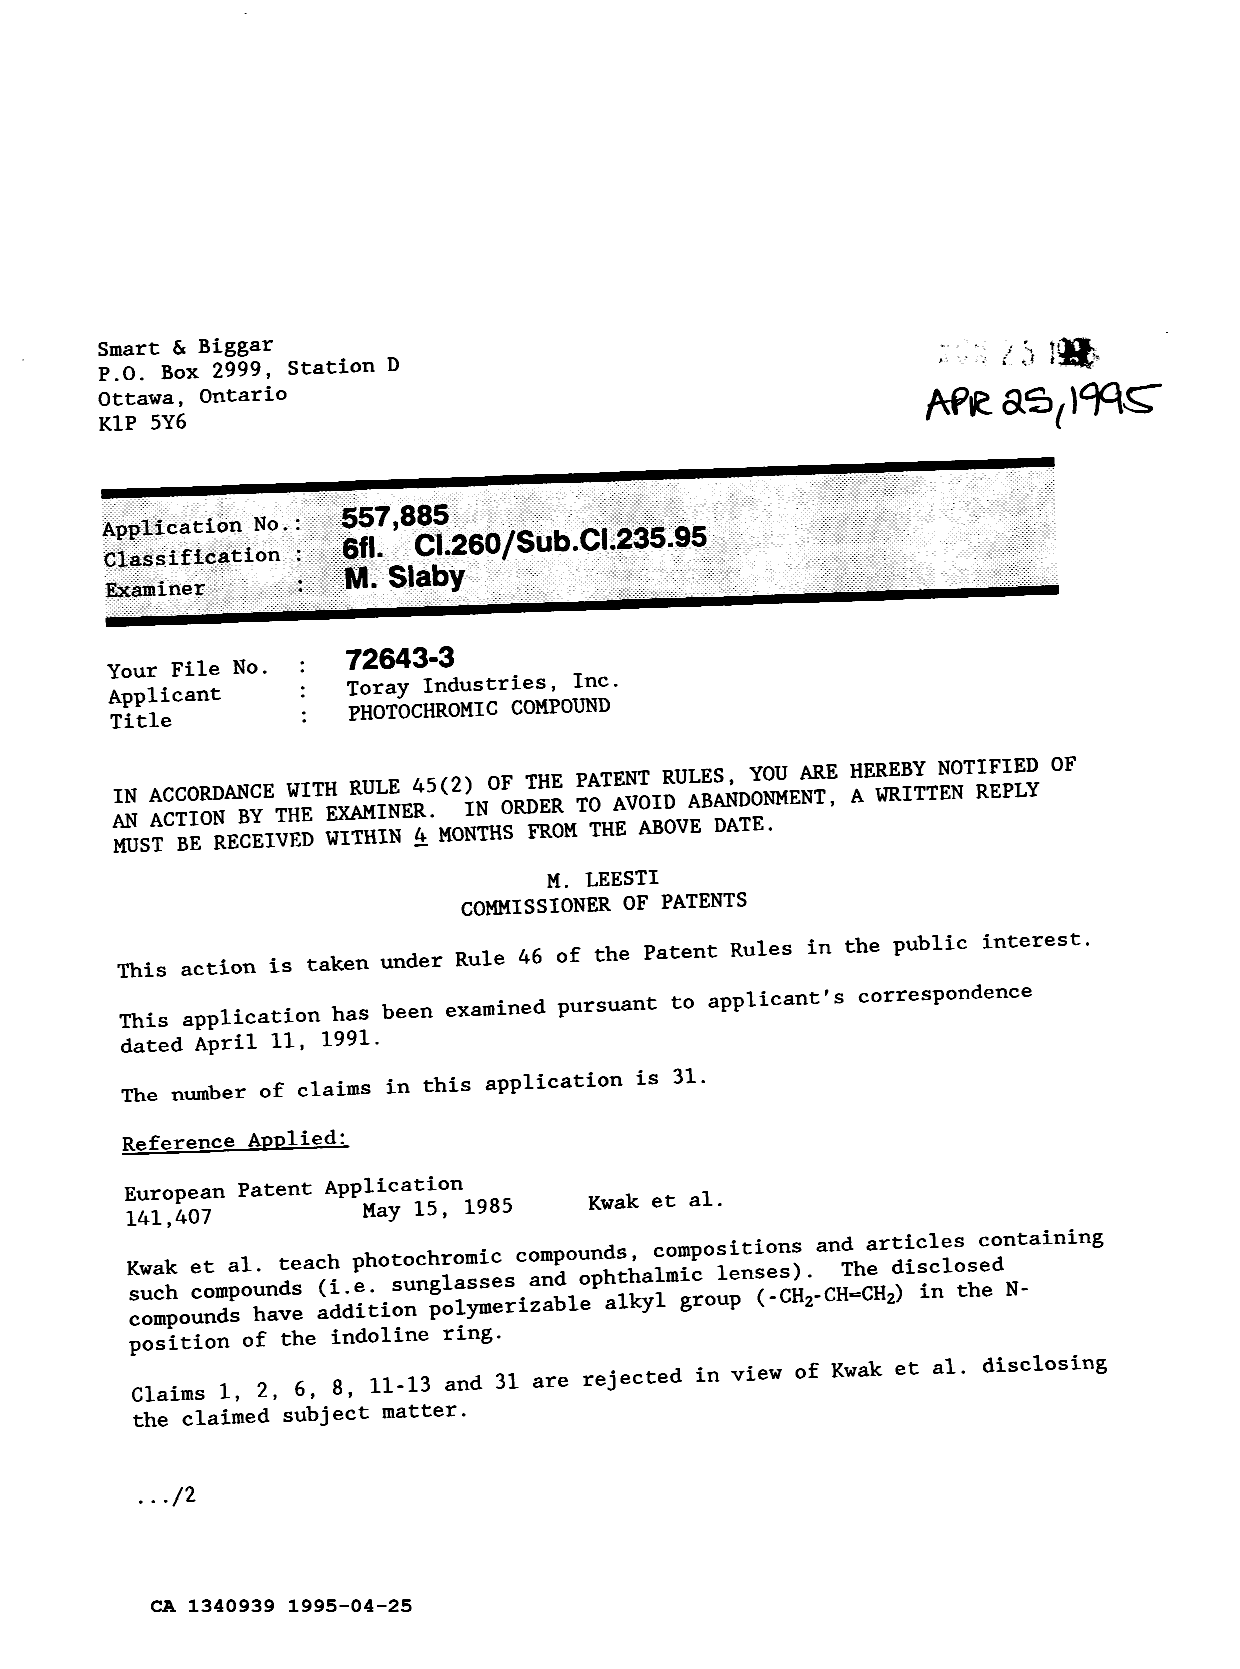 Document de brevet canadien 1340939. Demande d'examen 19950425. Image 1 de 2